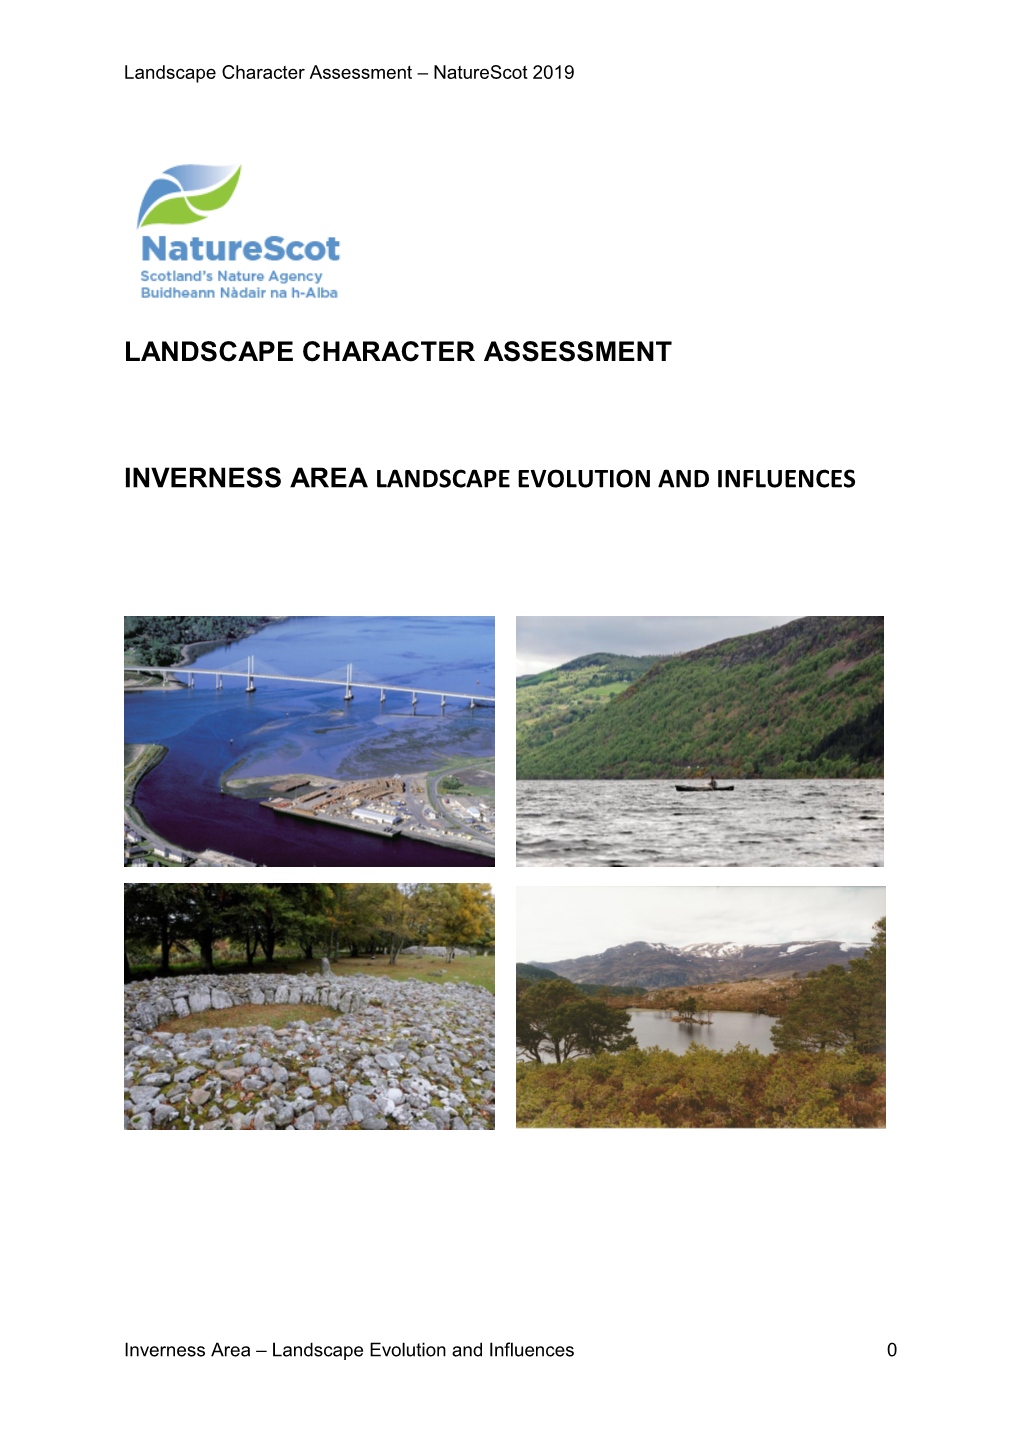 Landscape Character Assessment Inverness Area Landscape Evolution